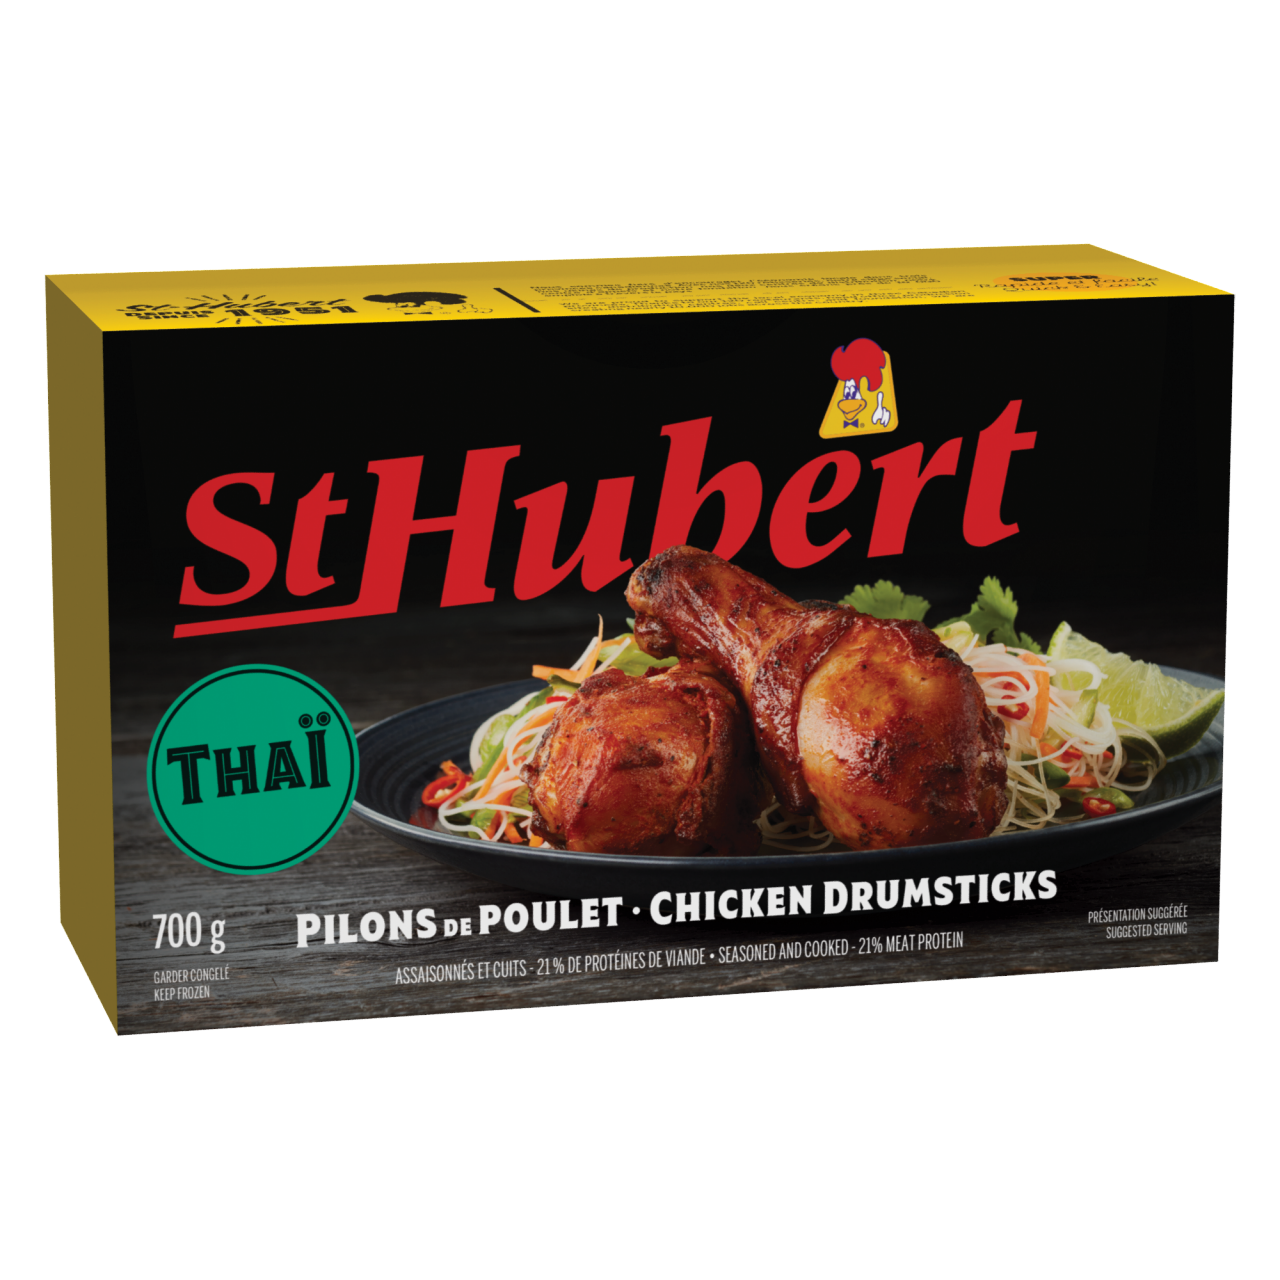 St-Hubert Thai Chicken Drumsticks